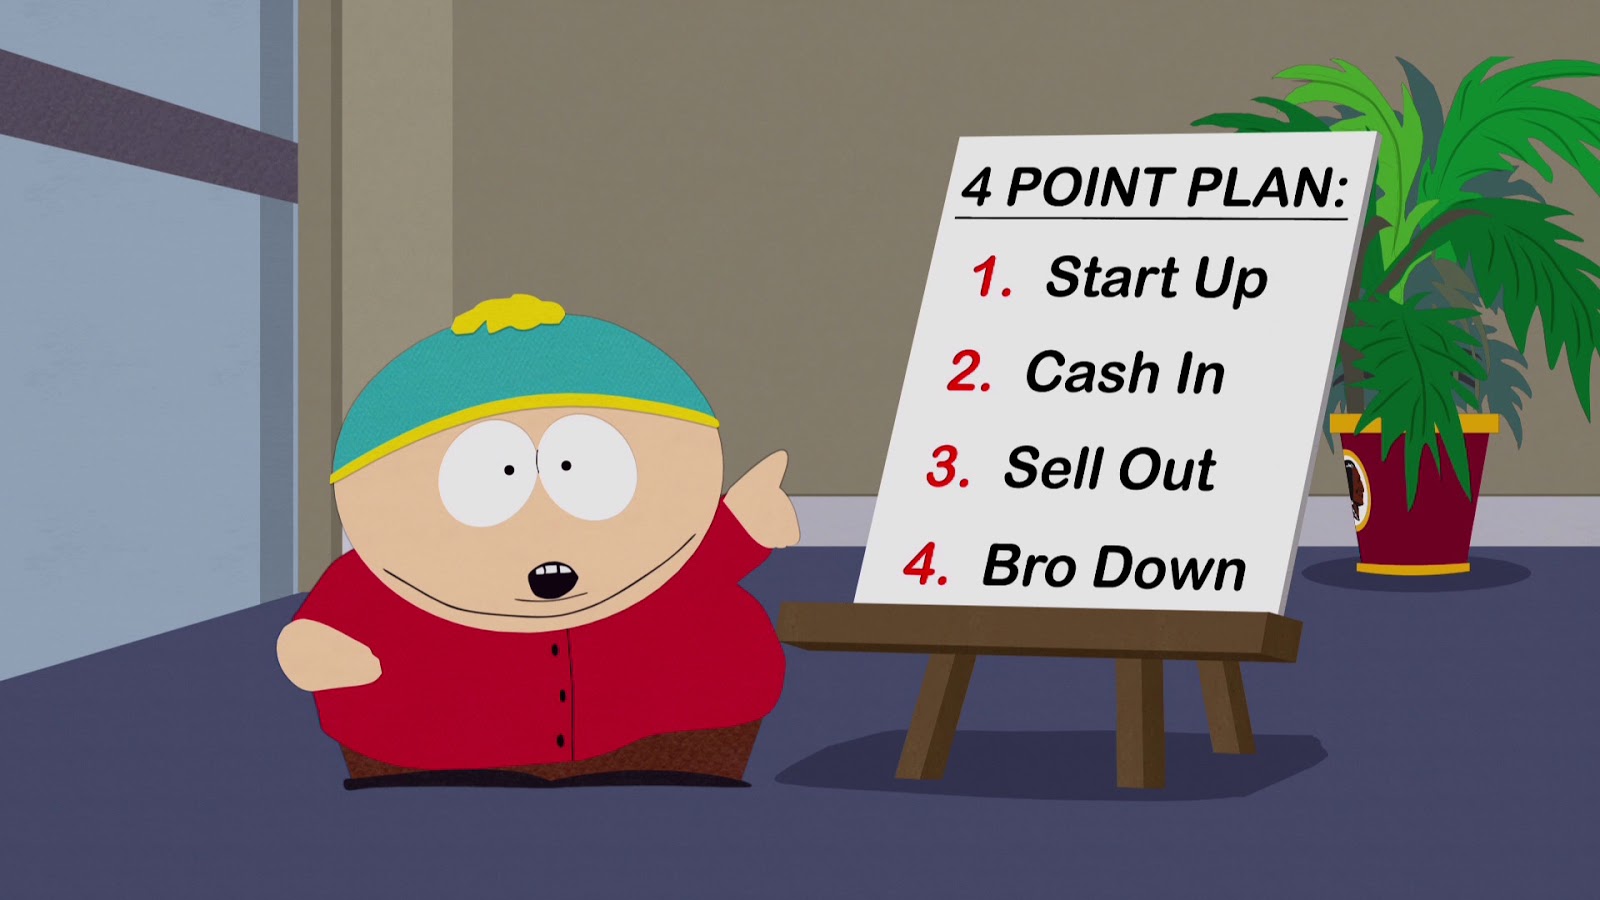 South Park Season 18 Review